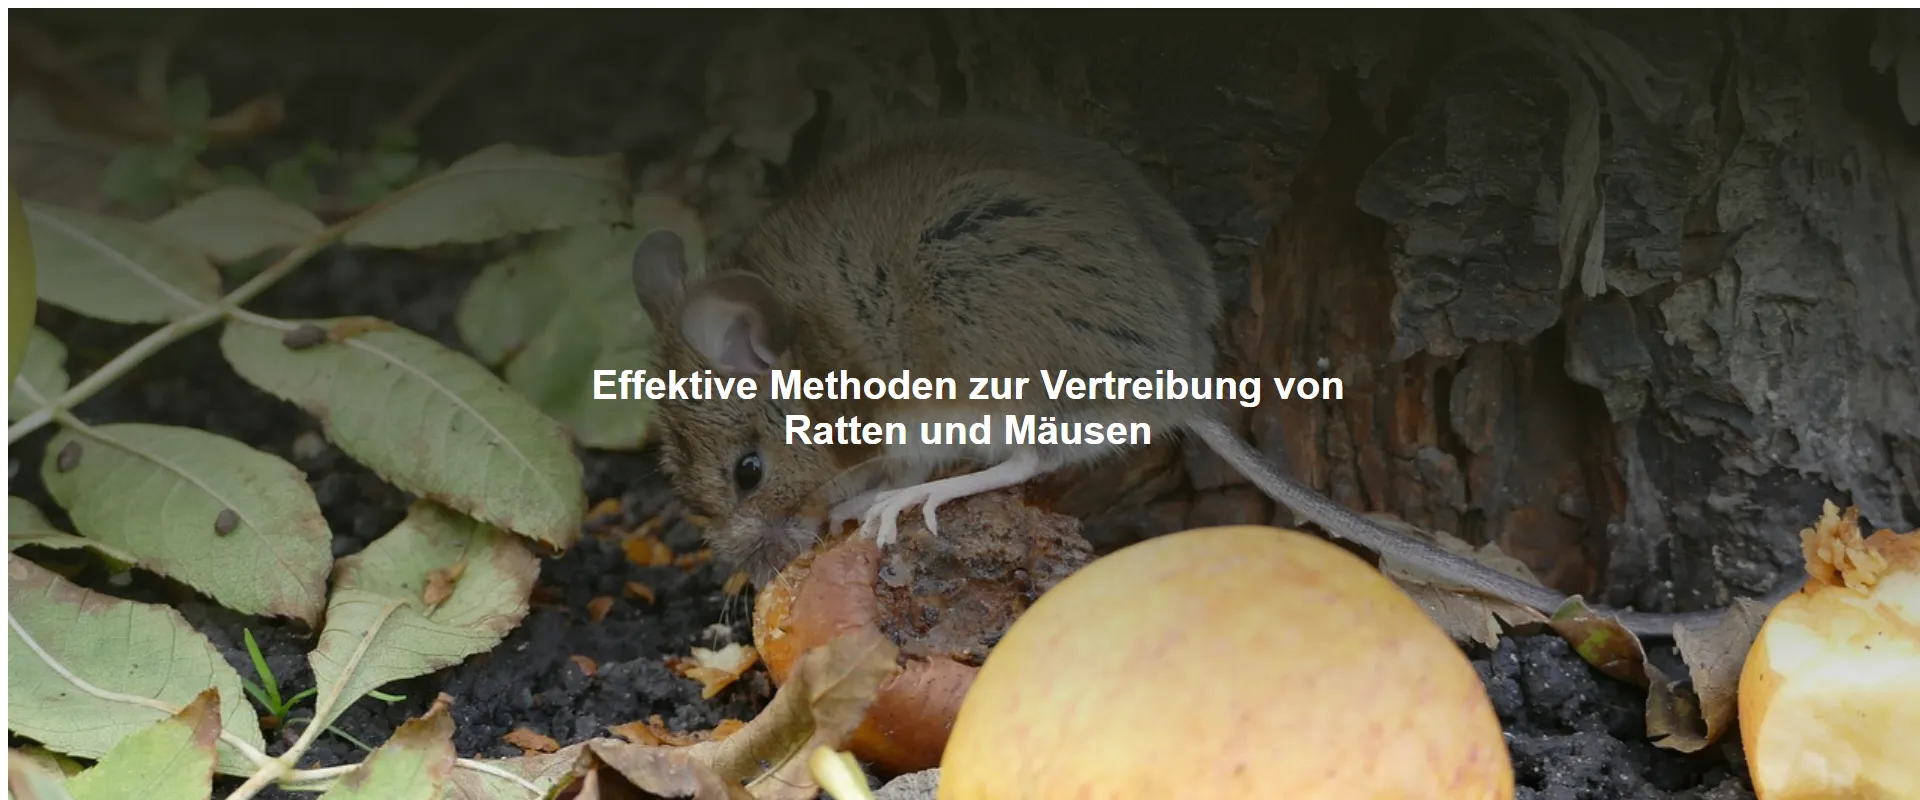 Effektive Methoden zur Vertreibung von Ratten und Mäusen